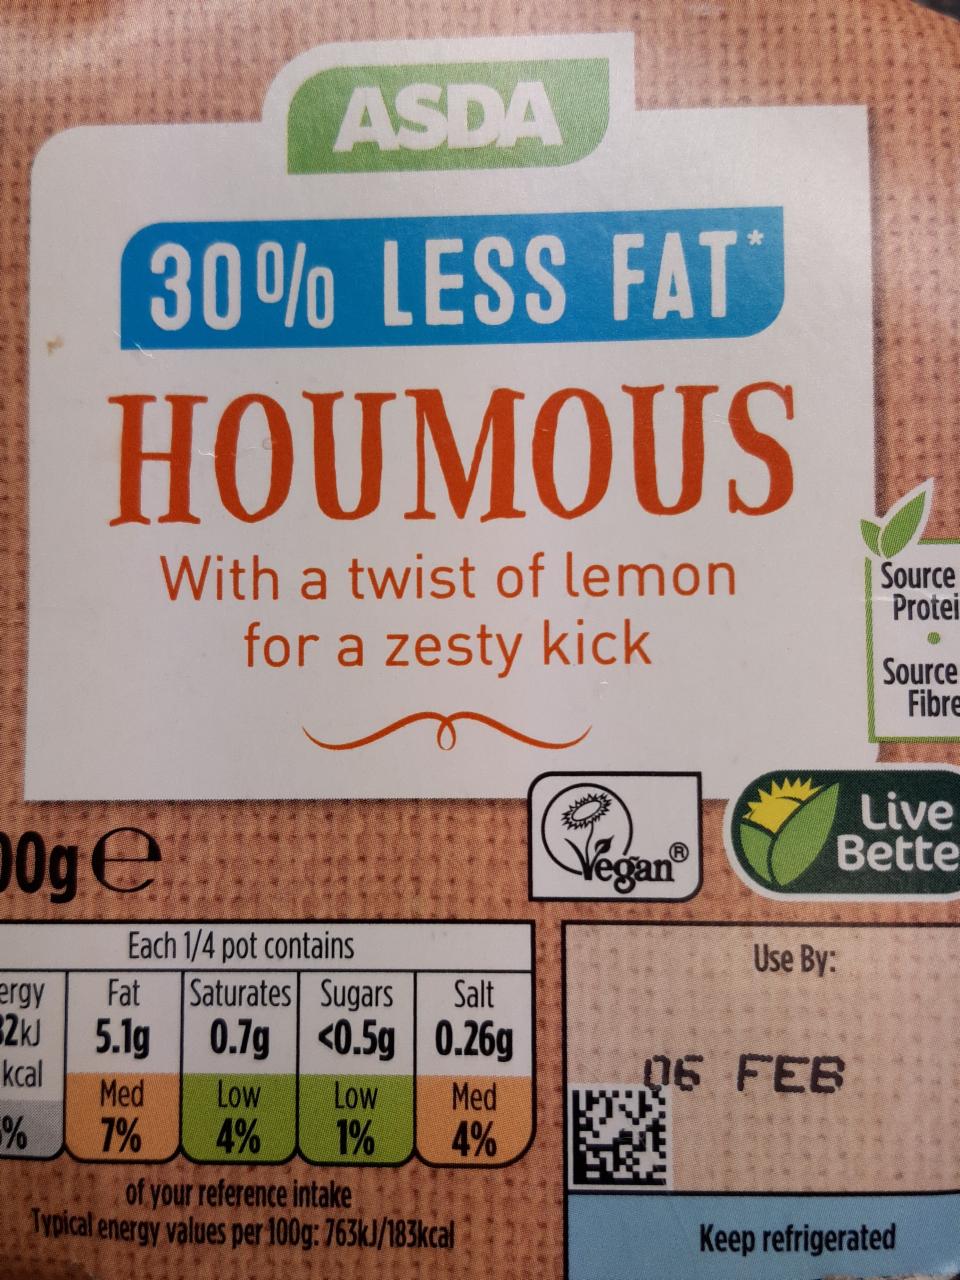 Fotografie - Houmous 30% less fat with a twist of lemon for a zesty kick Asda